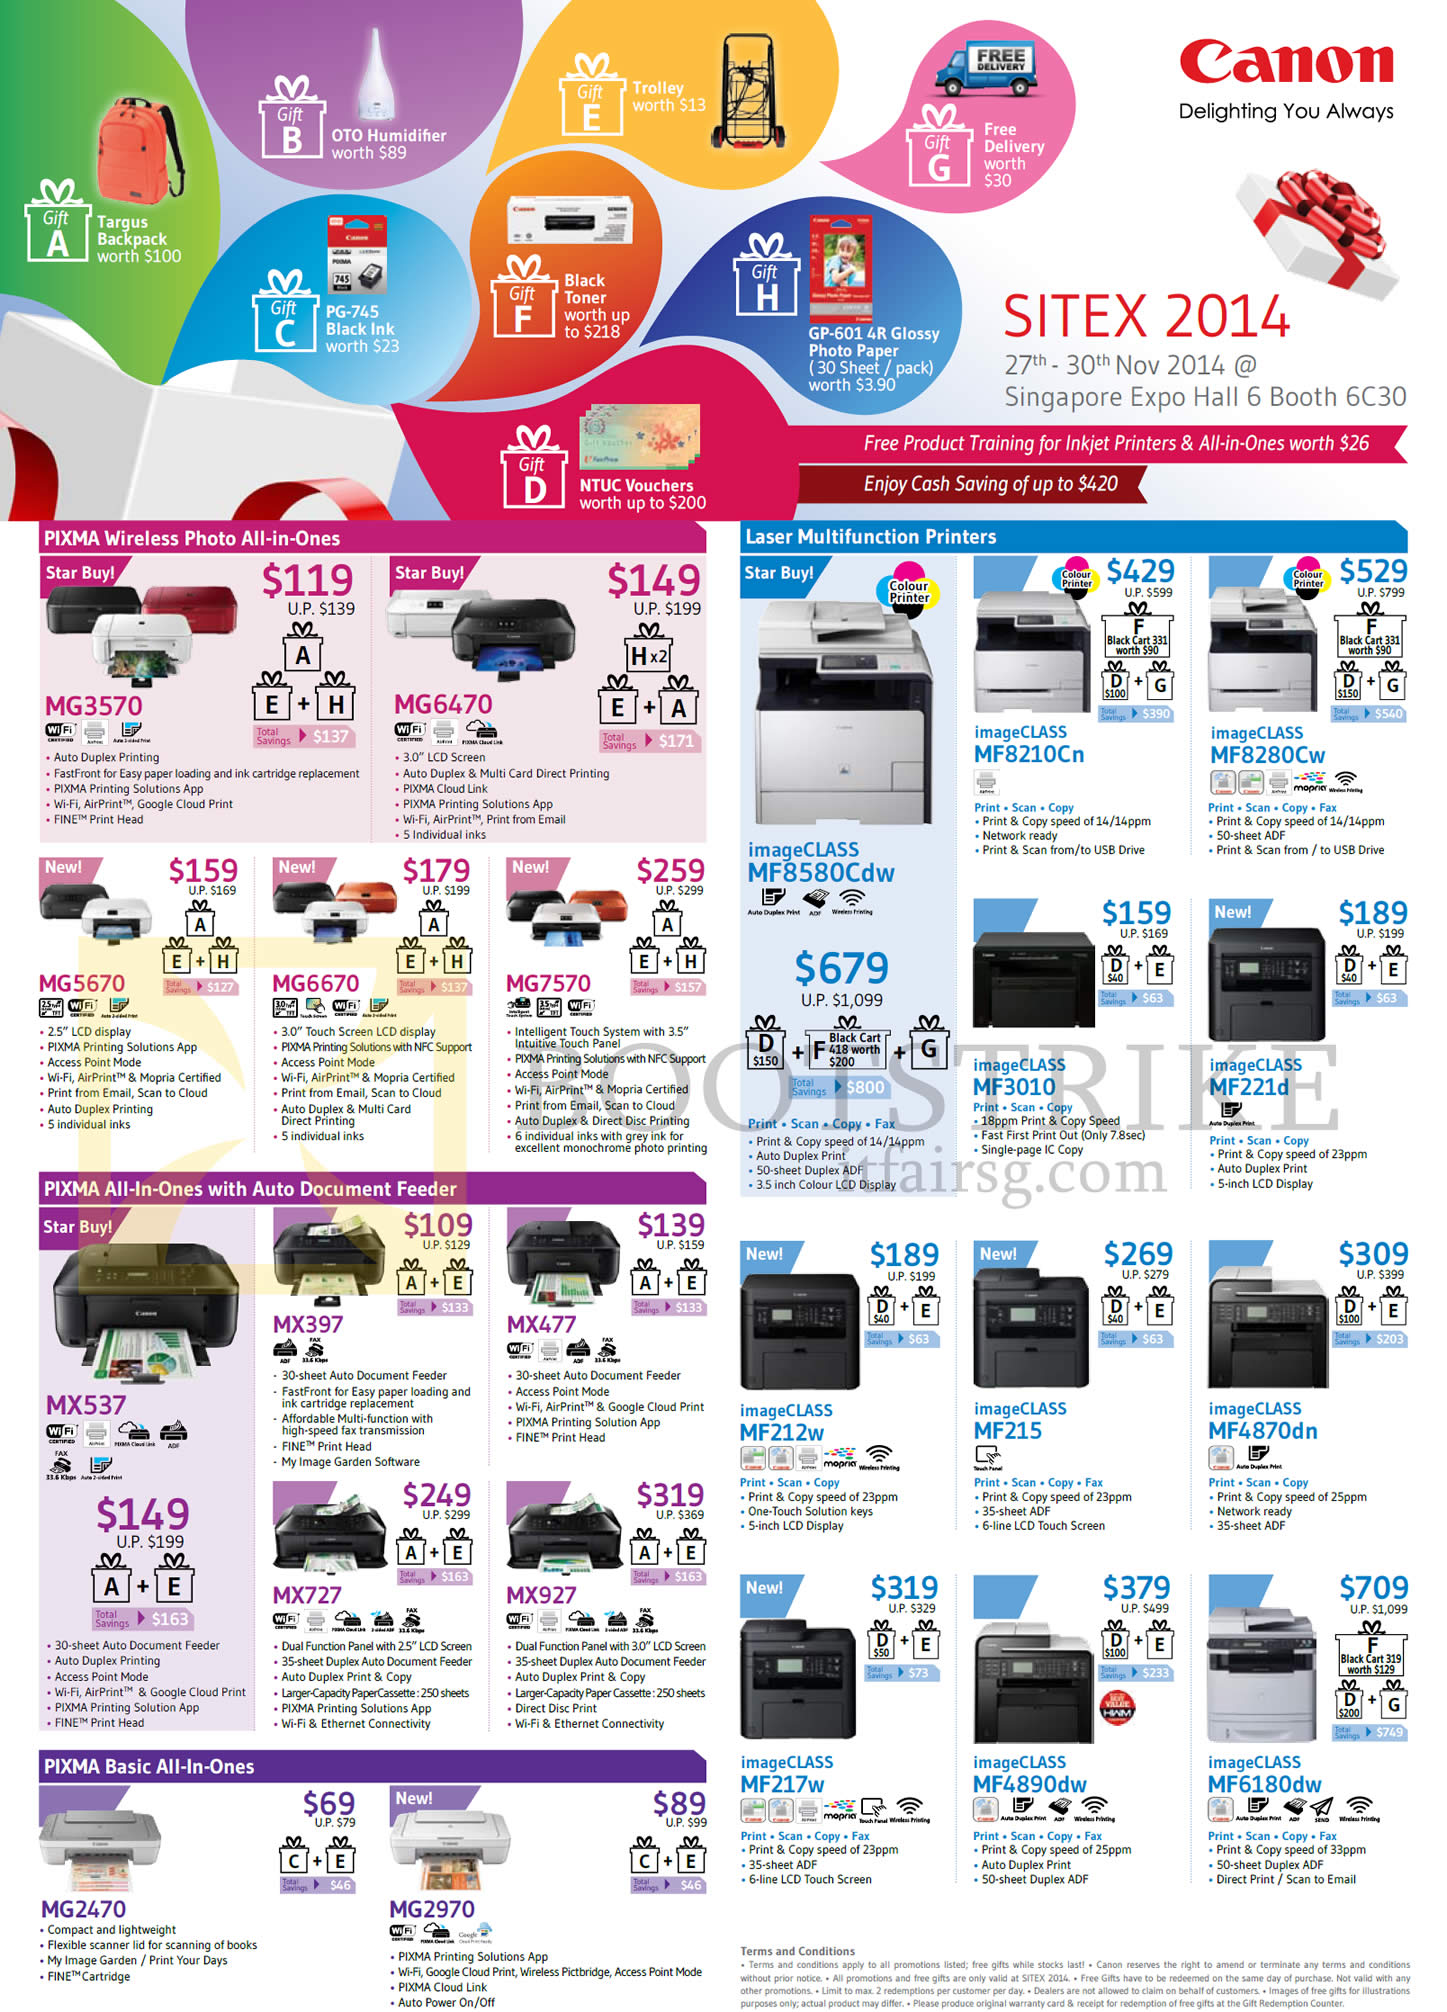 SITEX 2014 price list image brochure of Canon Printers Pxma Inkjet MG3570, MG6470, MG6670, MX537, MX477, ImageCLASS Laser MF8210Cn, MF221d, MF4870dn, MF215, MF4890dw, MF6180dw